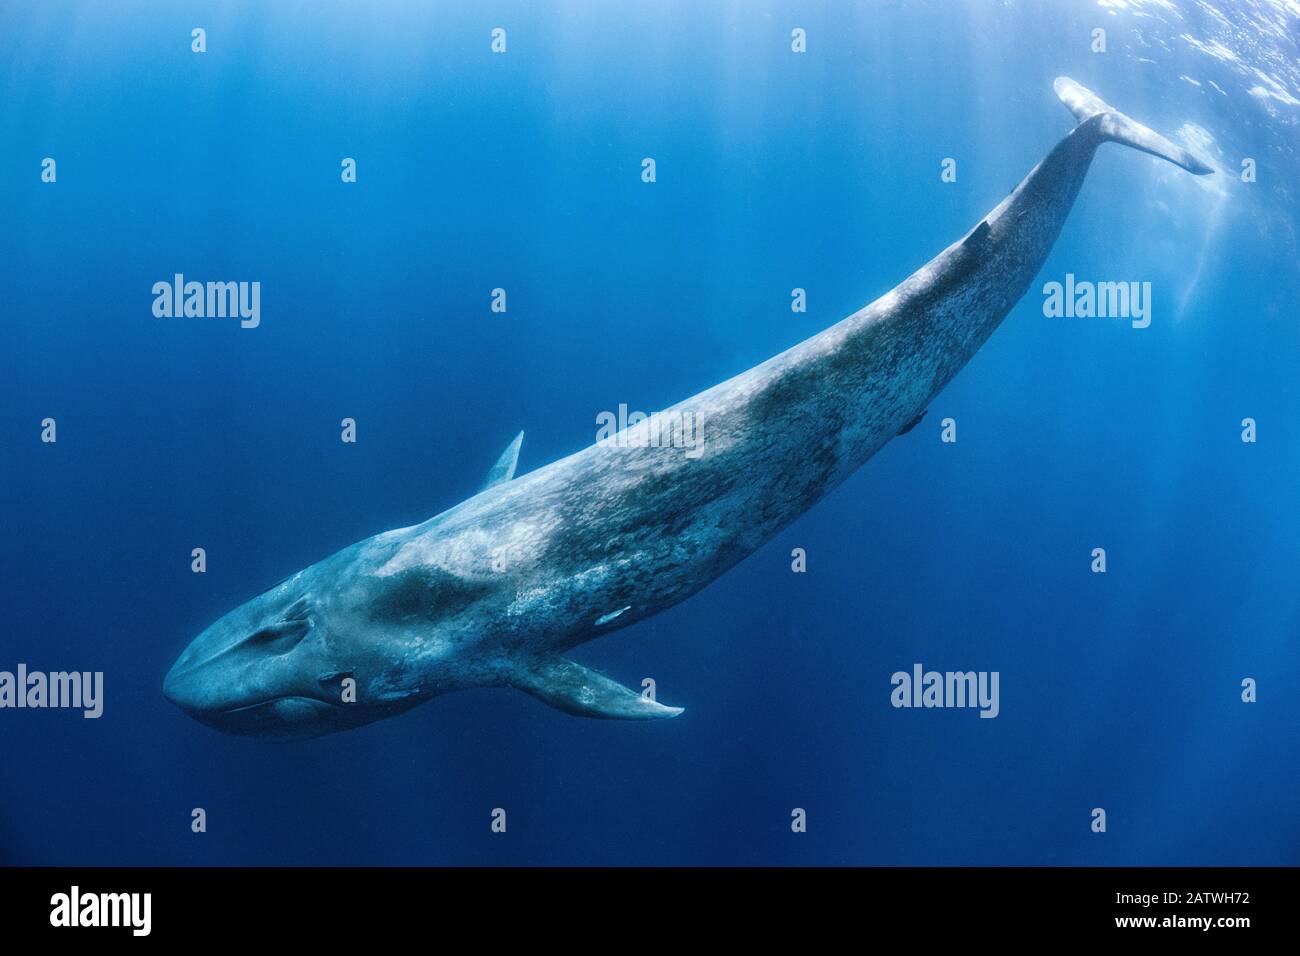 La baleine bleue (Balaenoptera musculus) naine sous la surface de l'océan. Océan Indien, Au Large Du Sri Lanka. Banque D'Images